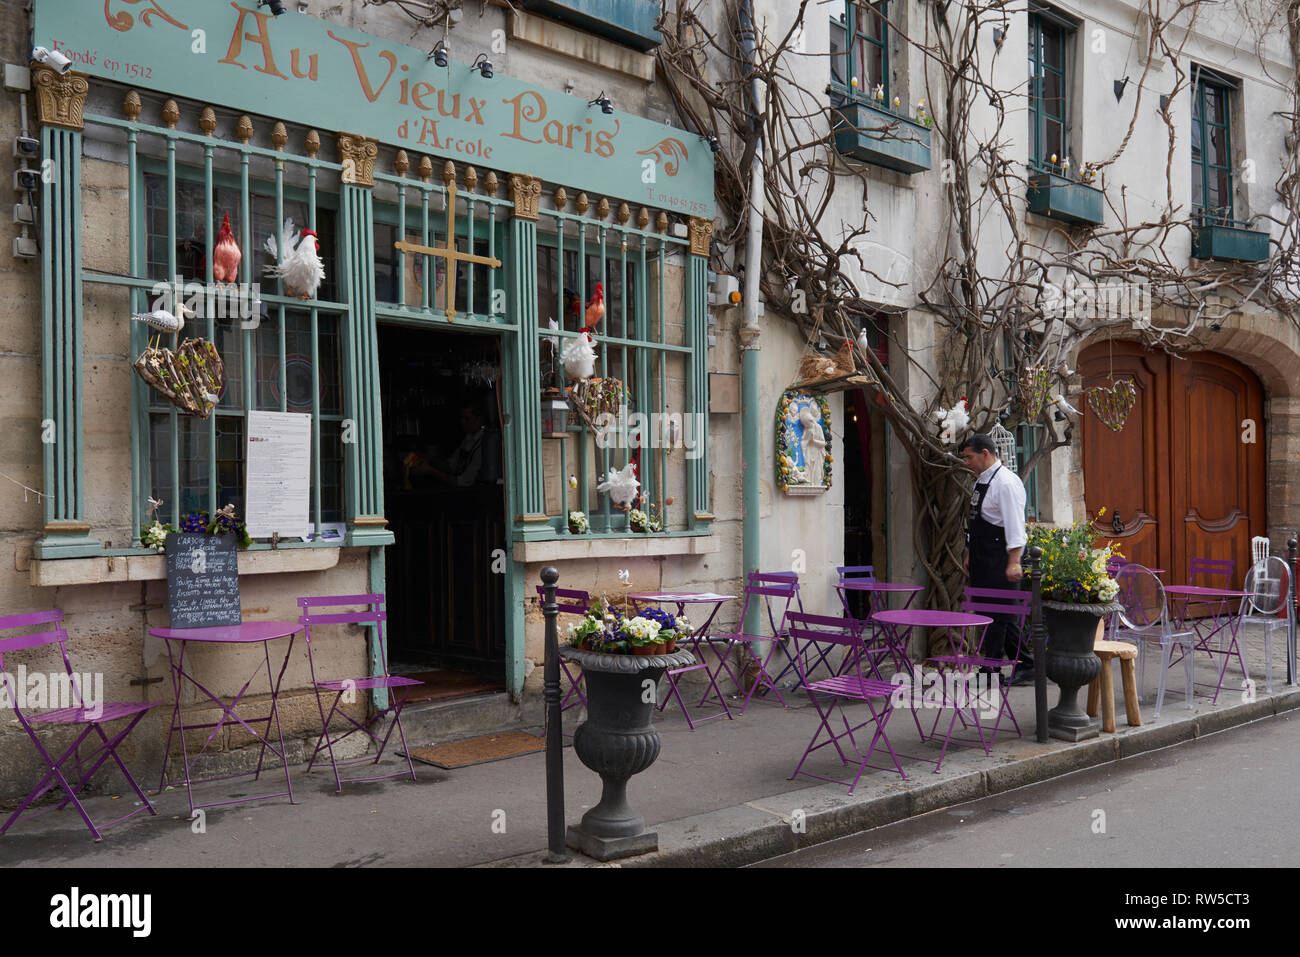 Chef al di fuori del tradizionale francese Au Vieux Paris d'Arcole ristorante. Bella Spring Street colori all'esterno di questo iconico café. Foto Stock